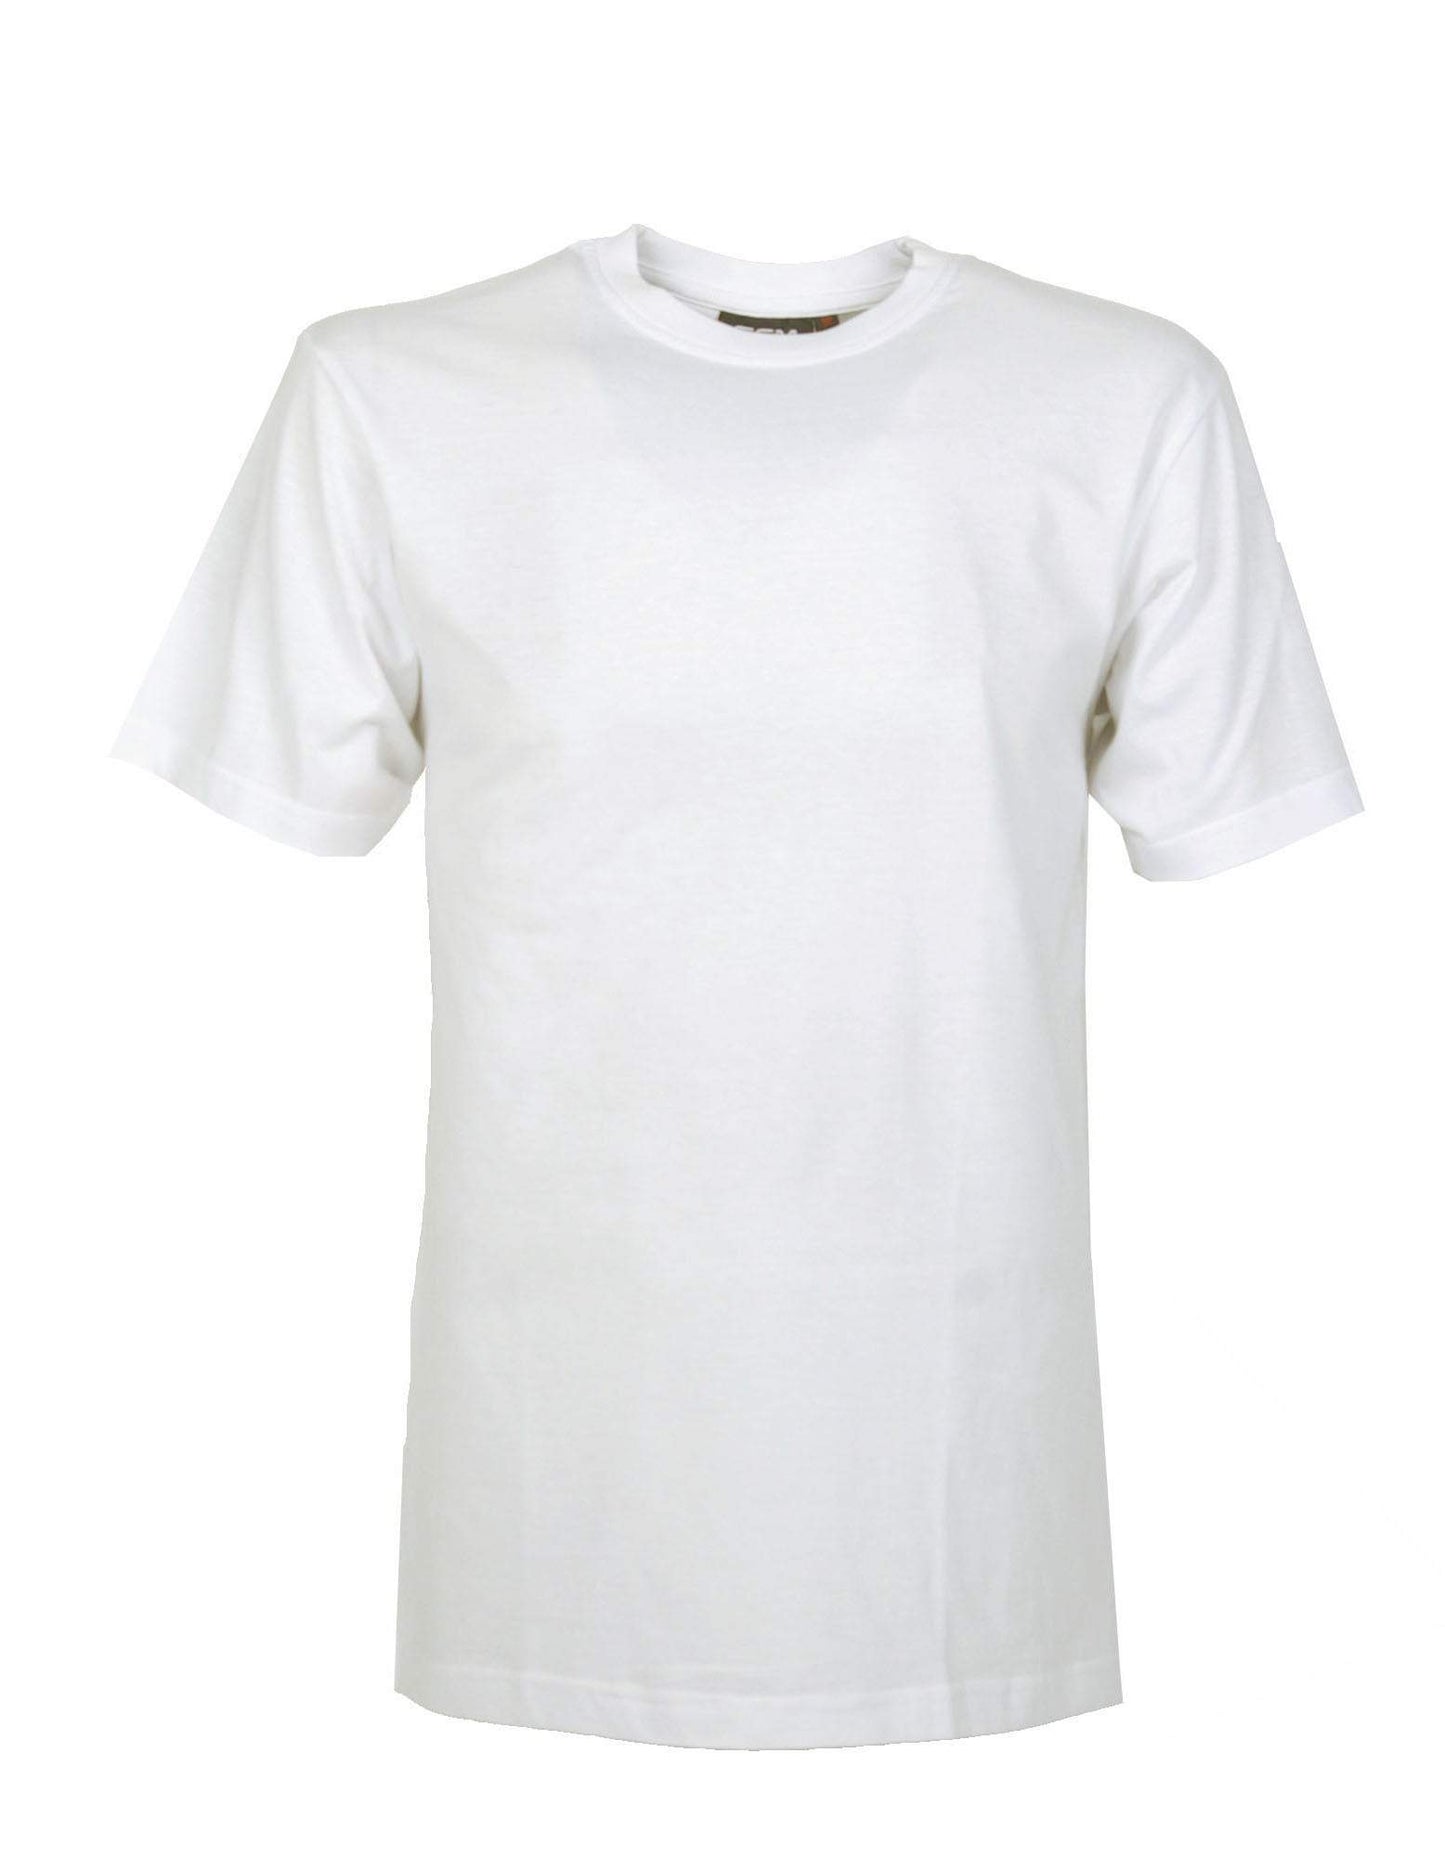 GCM original t-shirt ronde hals wit-Broeken Binkie-Grote maten,grote maten kleding,Grote Maten tops,grote tops,Ronde hals,Shirts